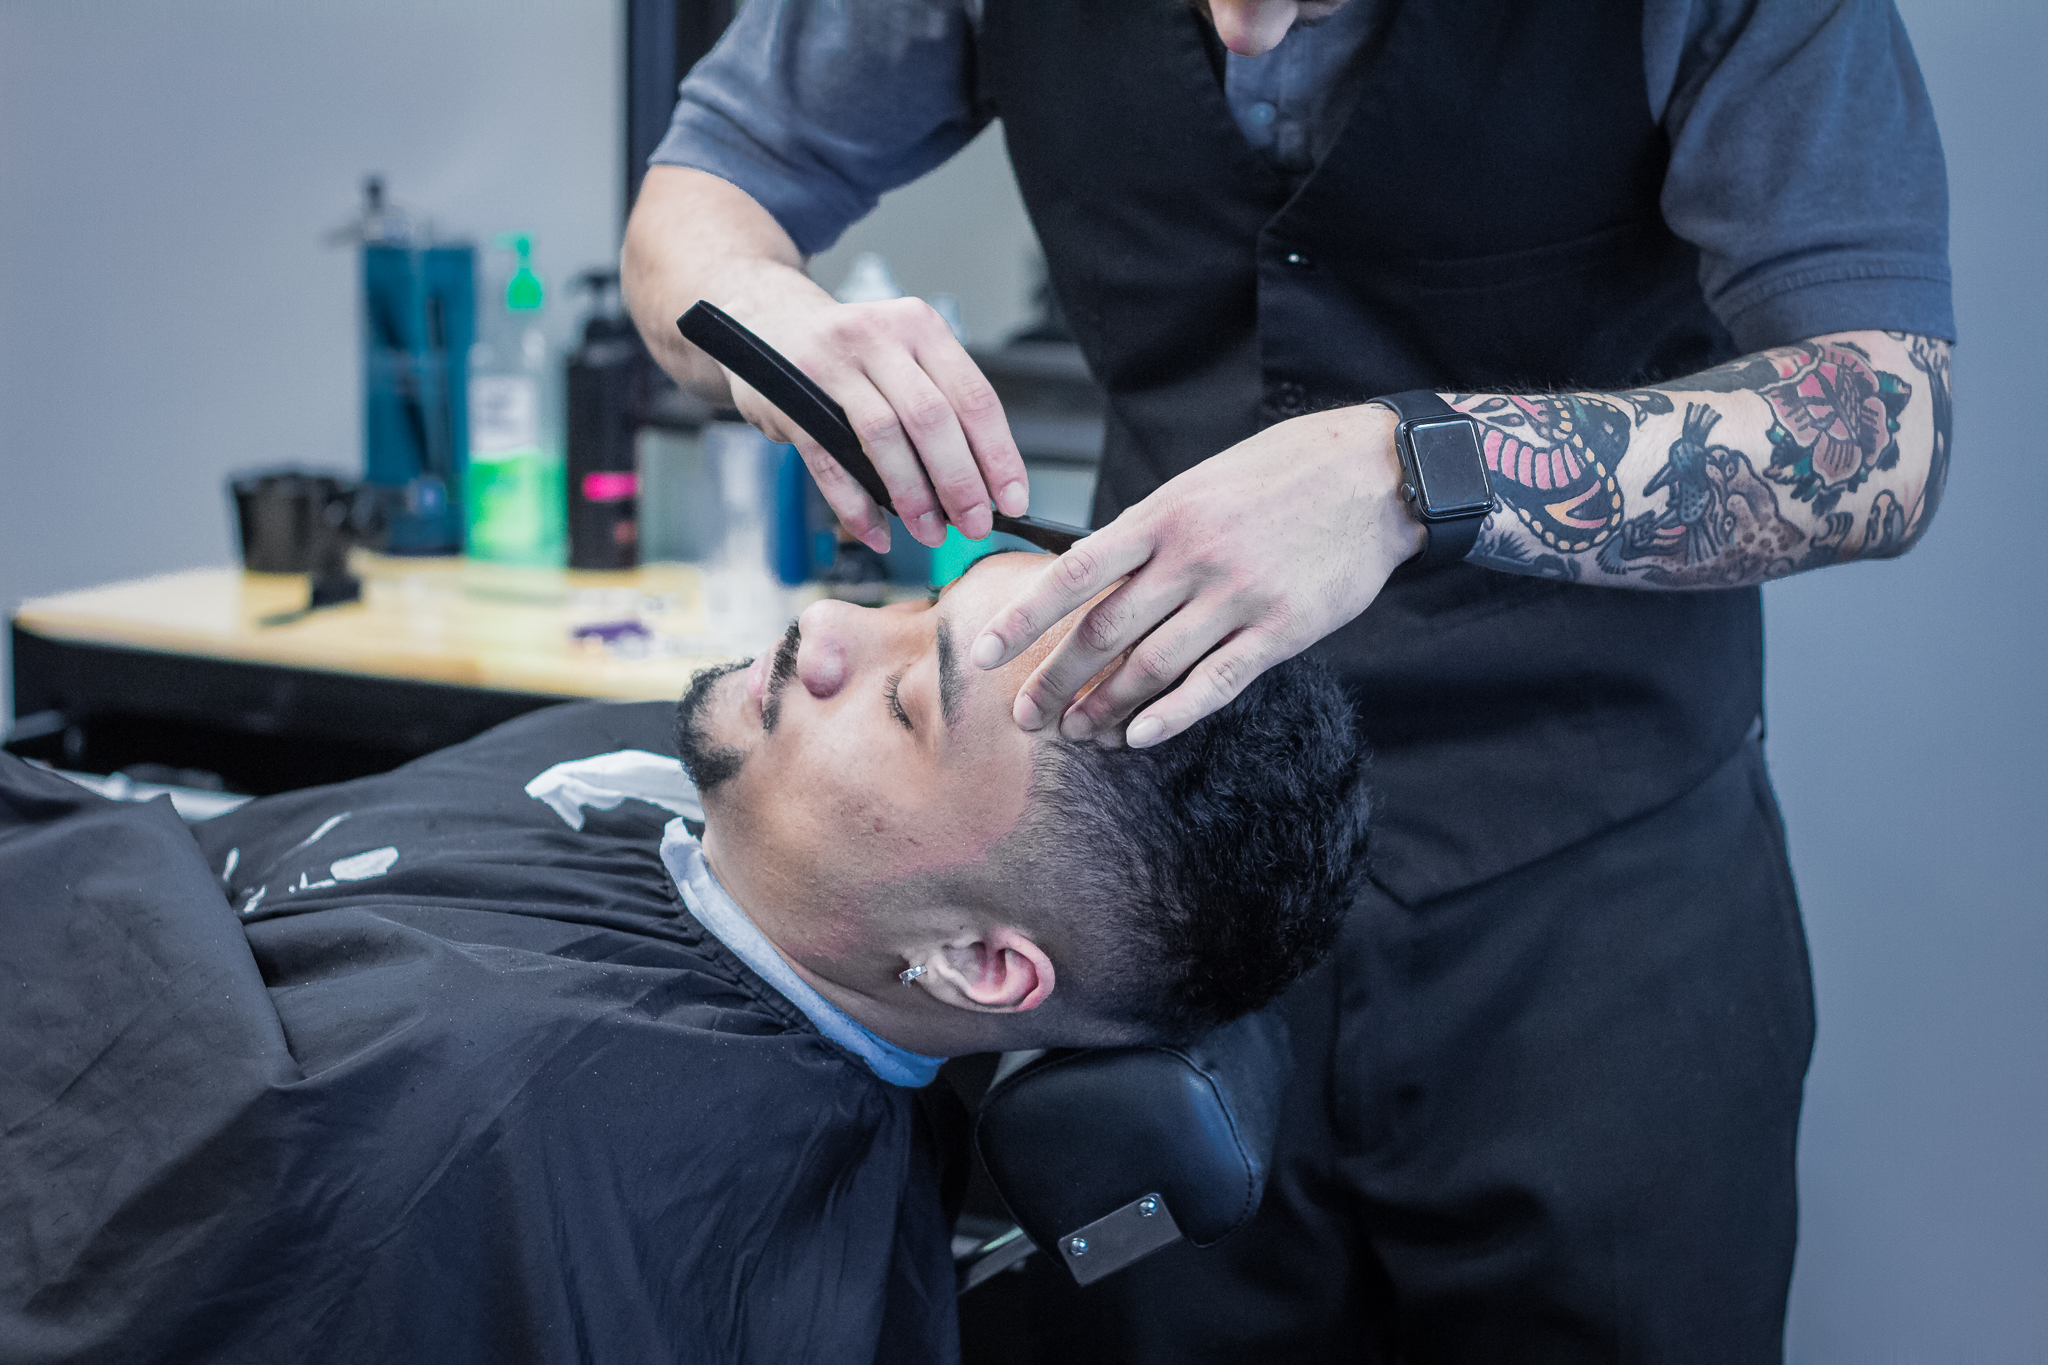 Hair Braiding — Regal Barber Co.